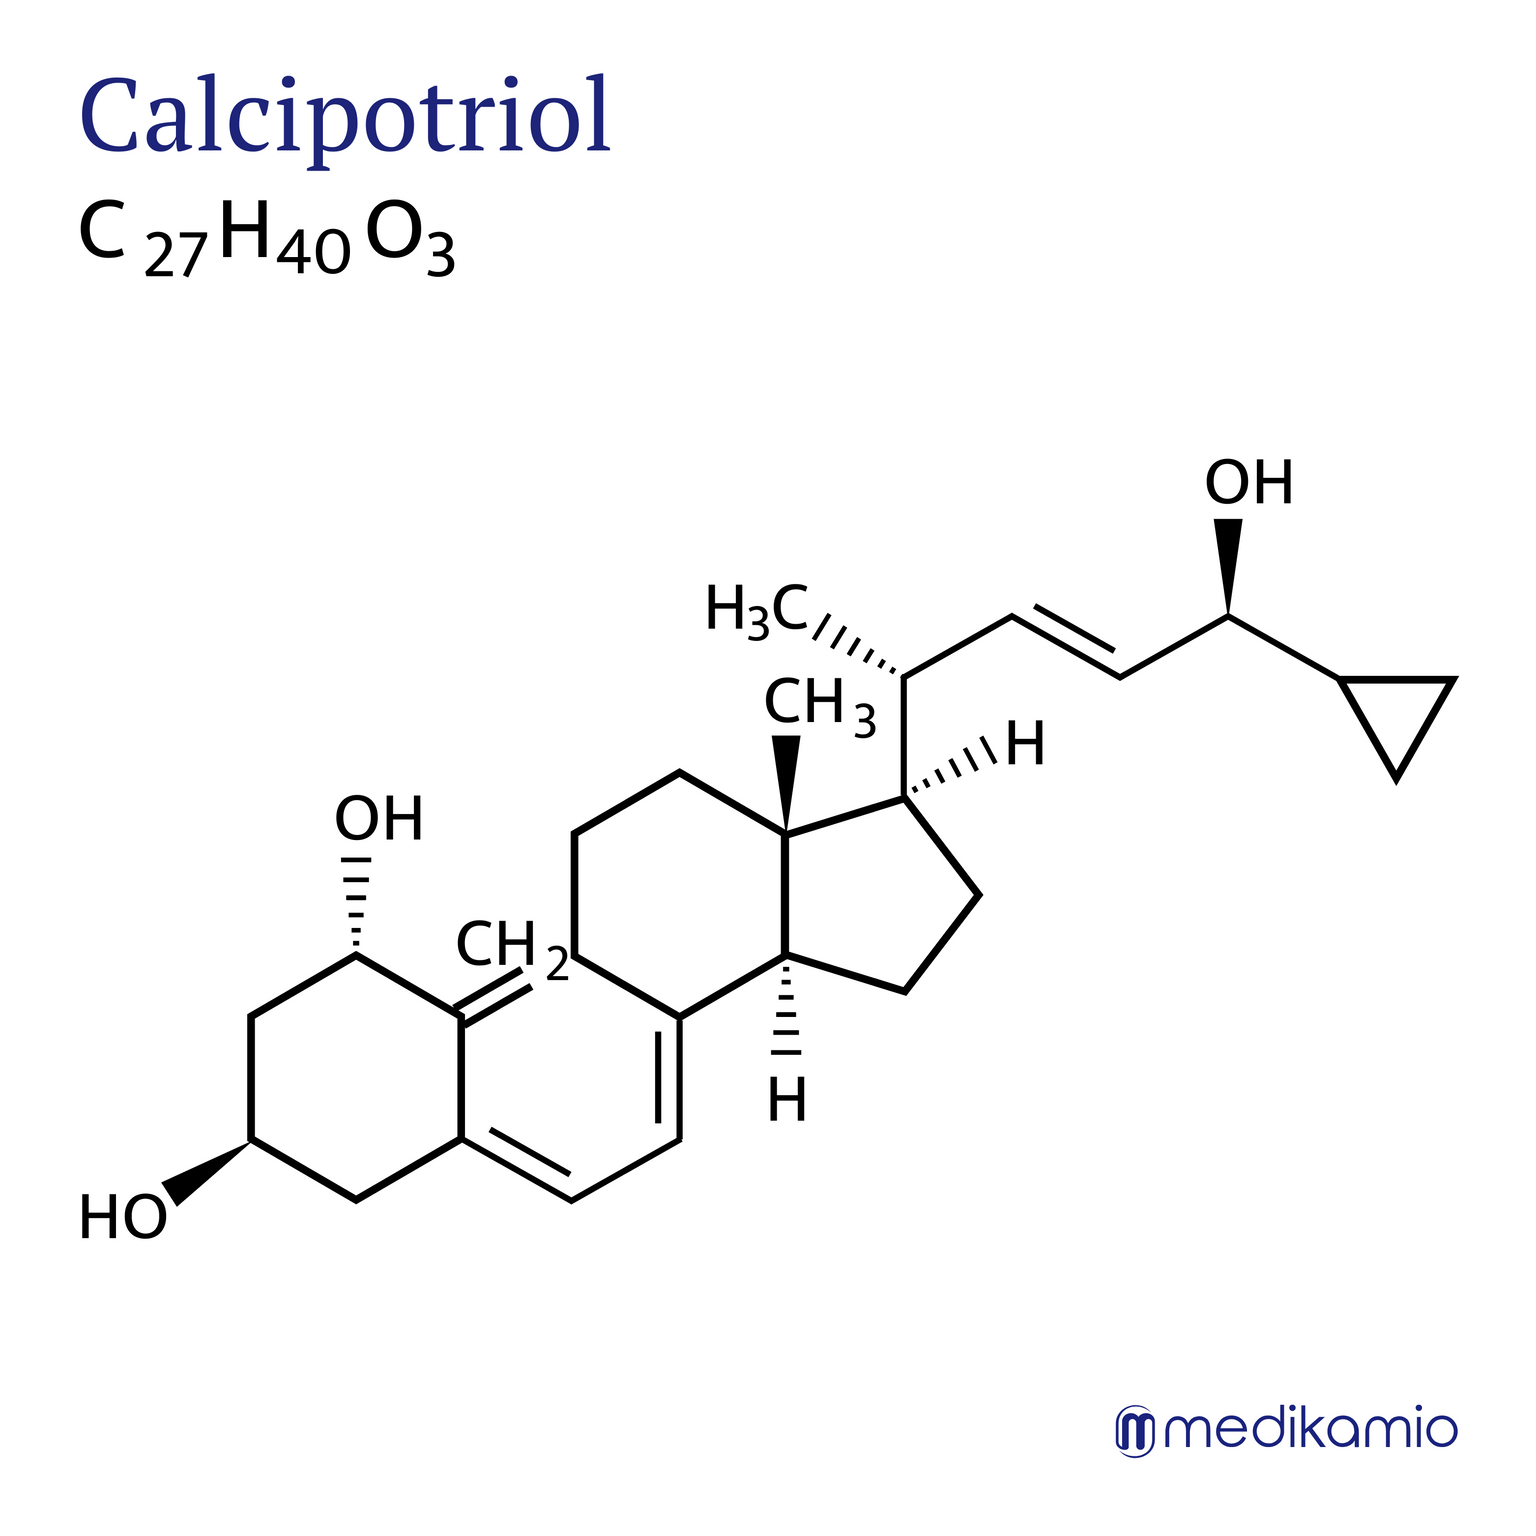 Fórmula estructural gráfica del principio activo calcipotriol